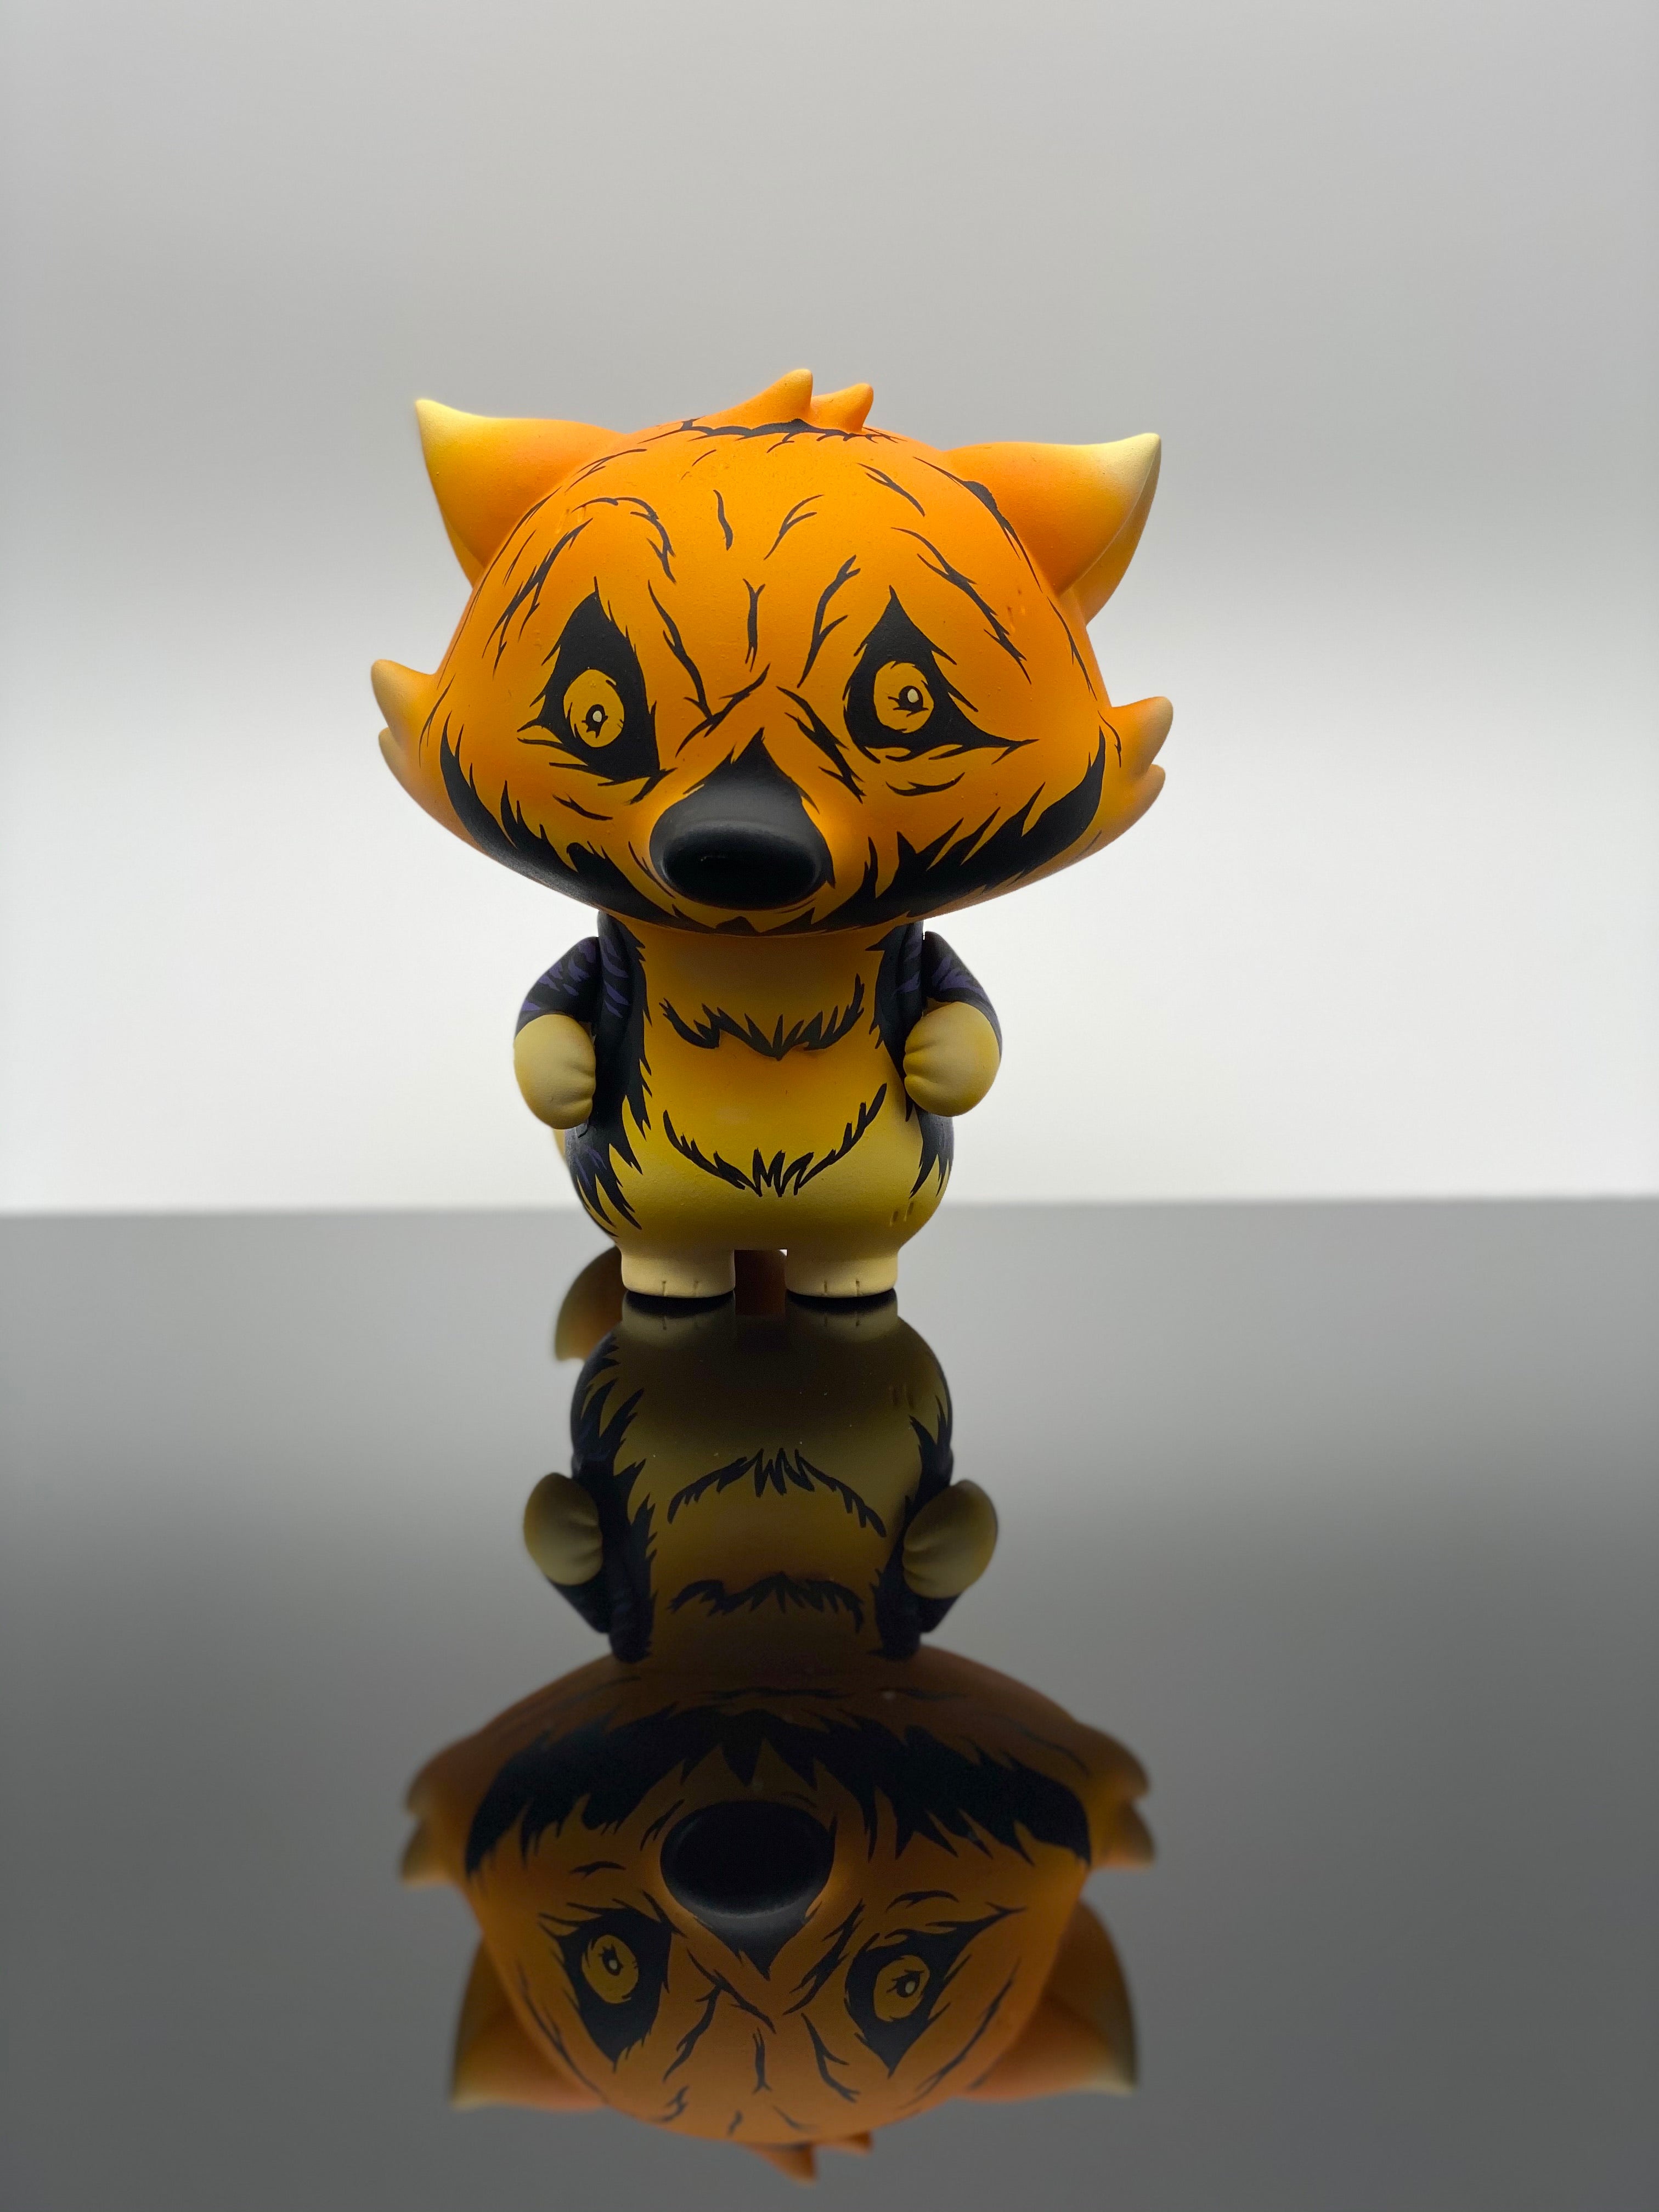 A custom Goobi Fox vinyl toy figurine on a reflective surface.